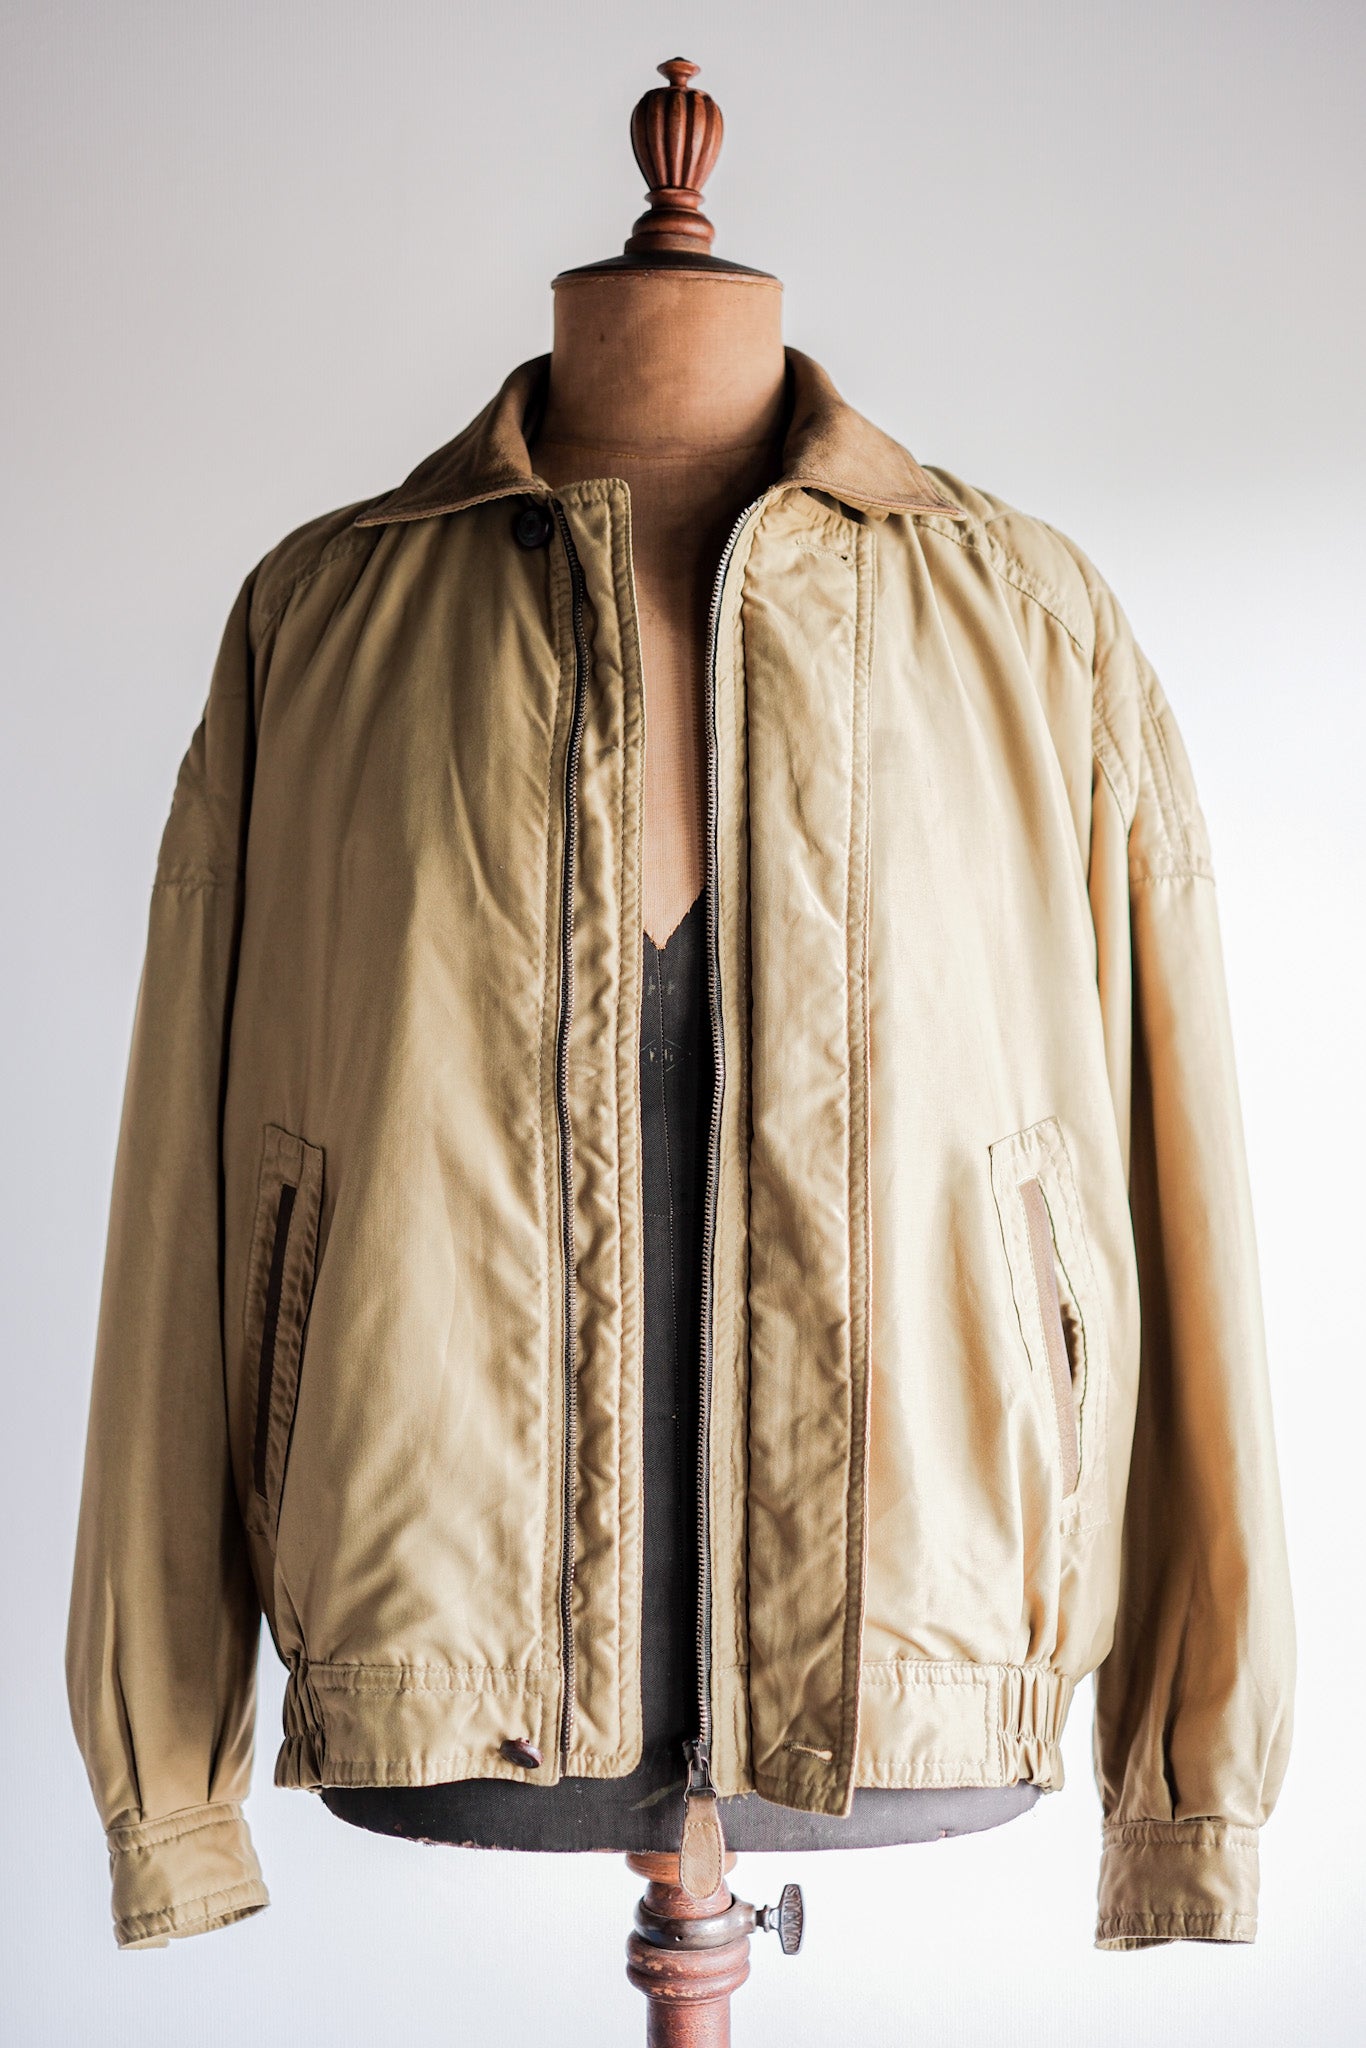 [~80 年代] 老 Yves Saint Laurent 尼龍絎縫上衣配下巴帶“Pour Homme”